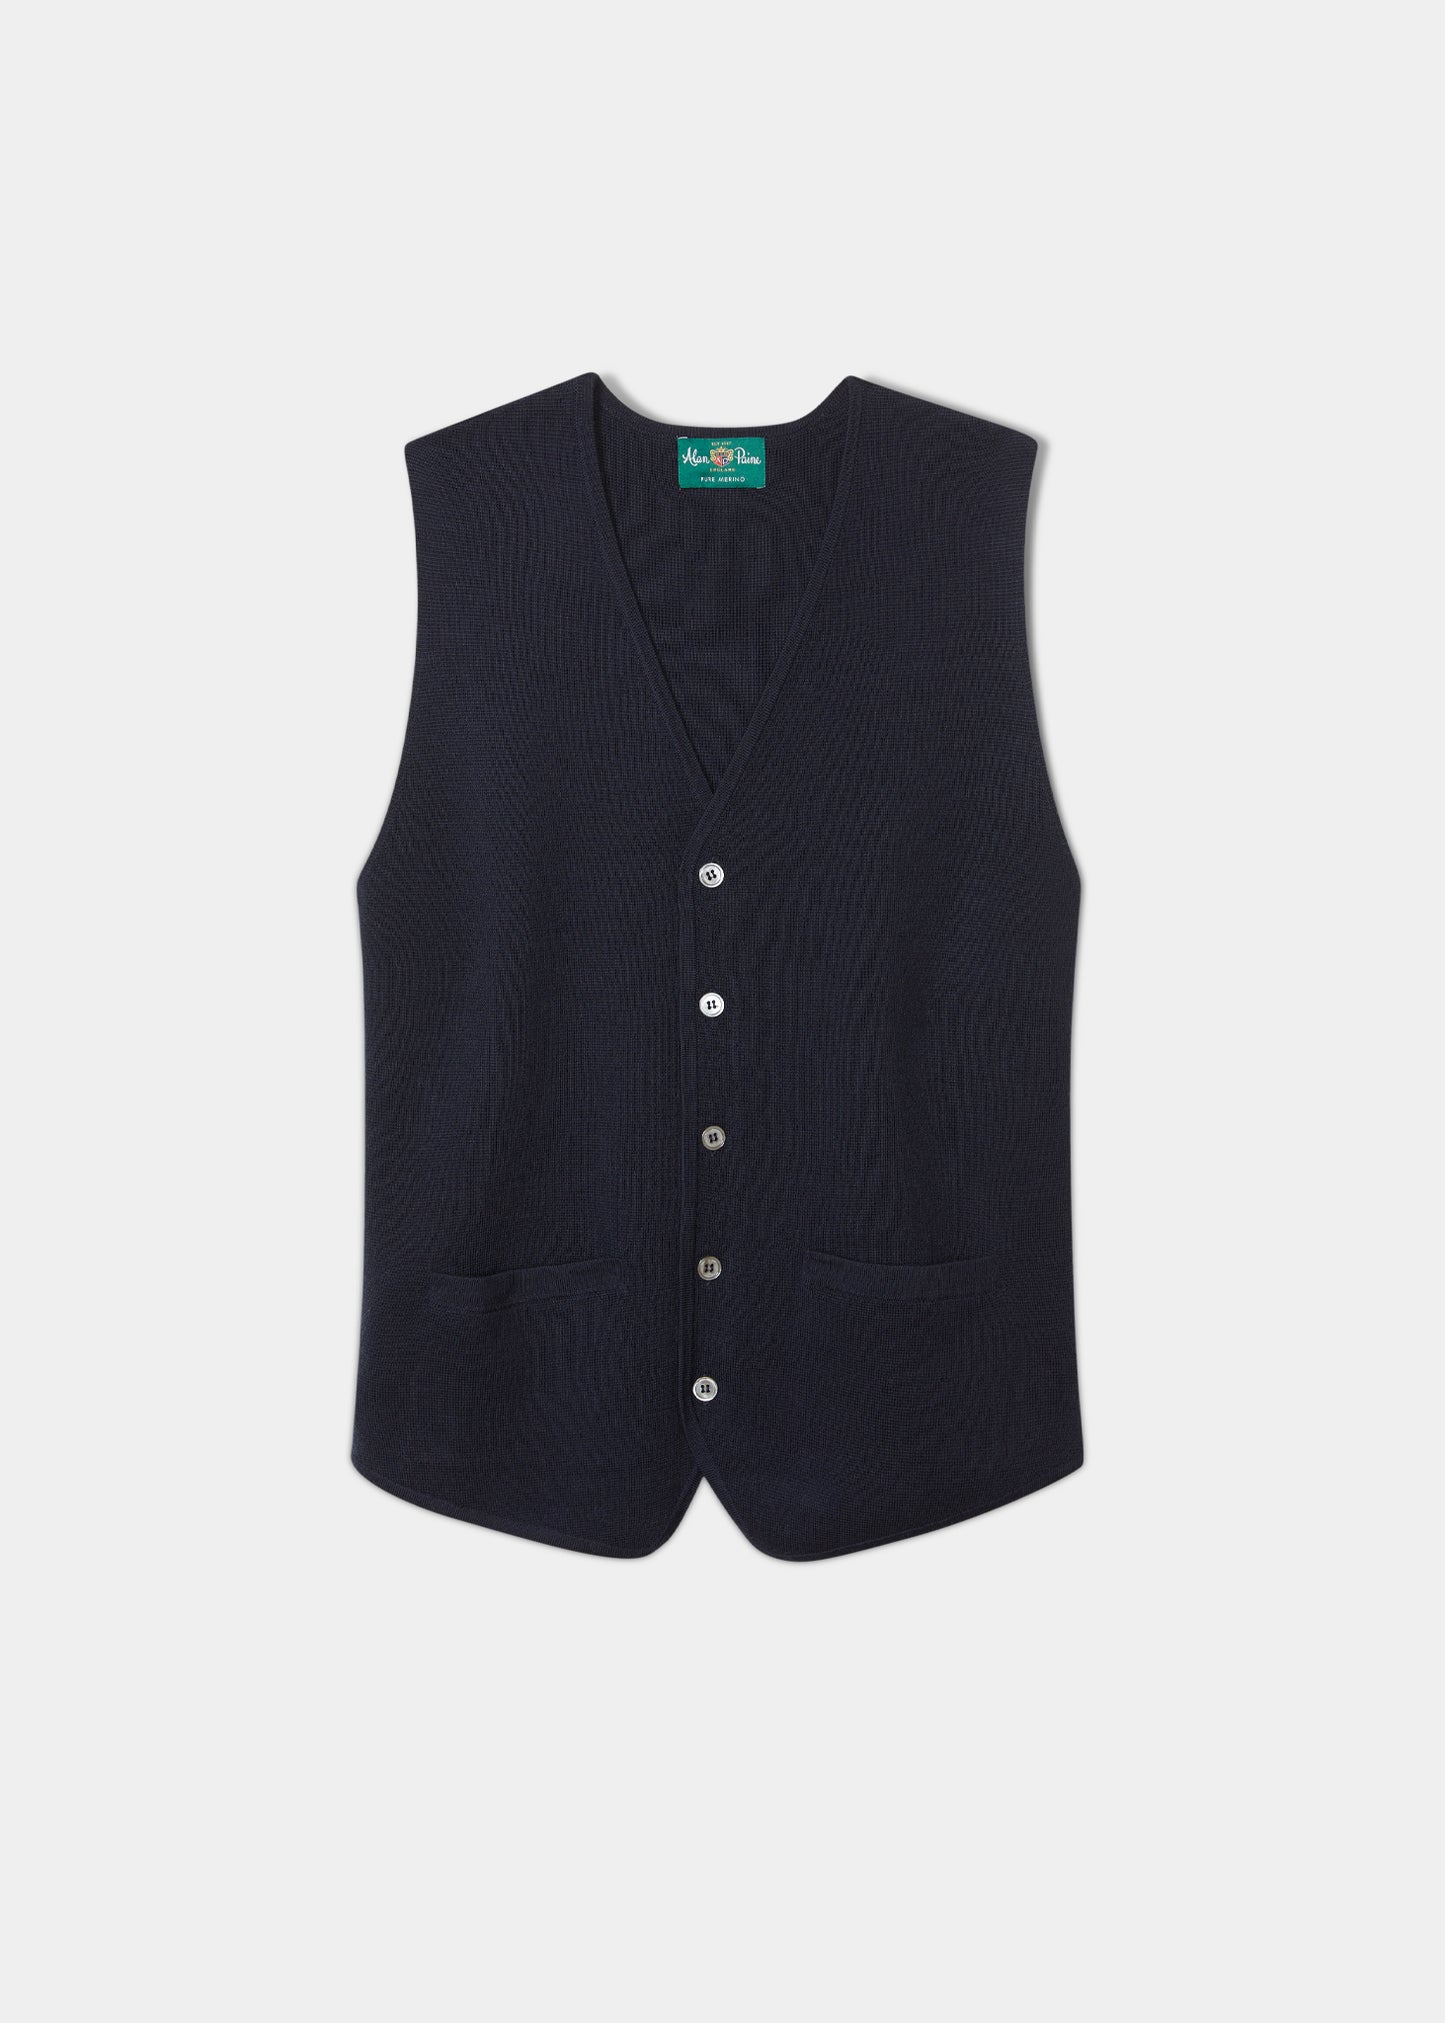 mens-merino-wool-tailored-waistcoat-dark-navy